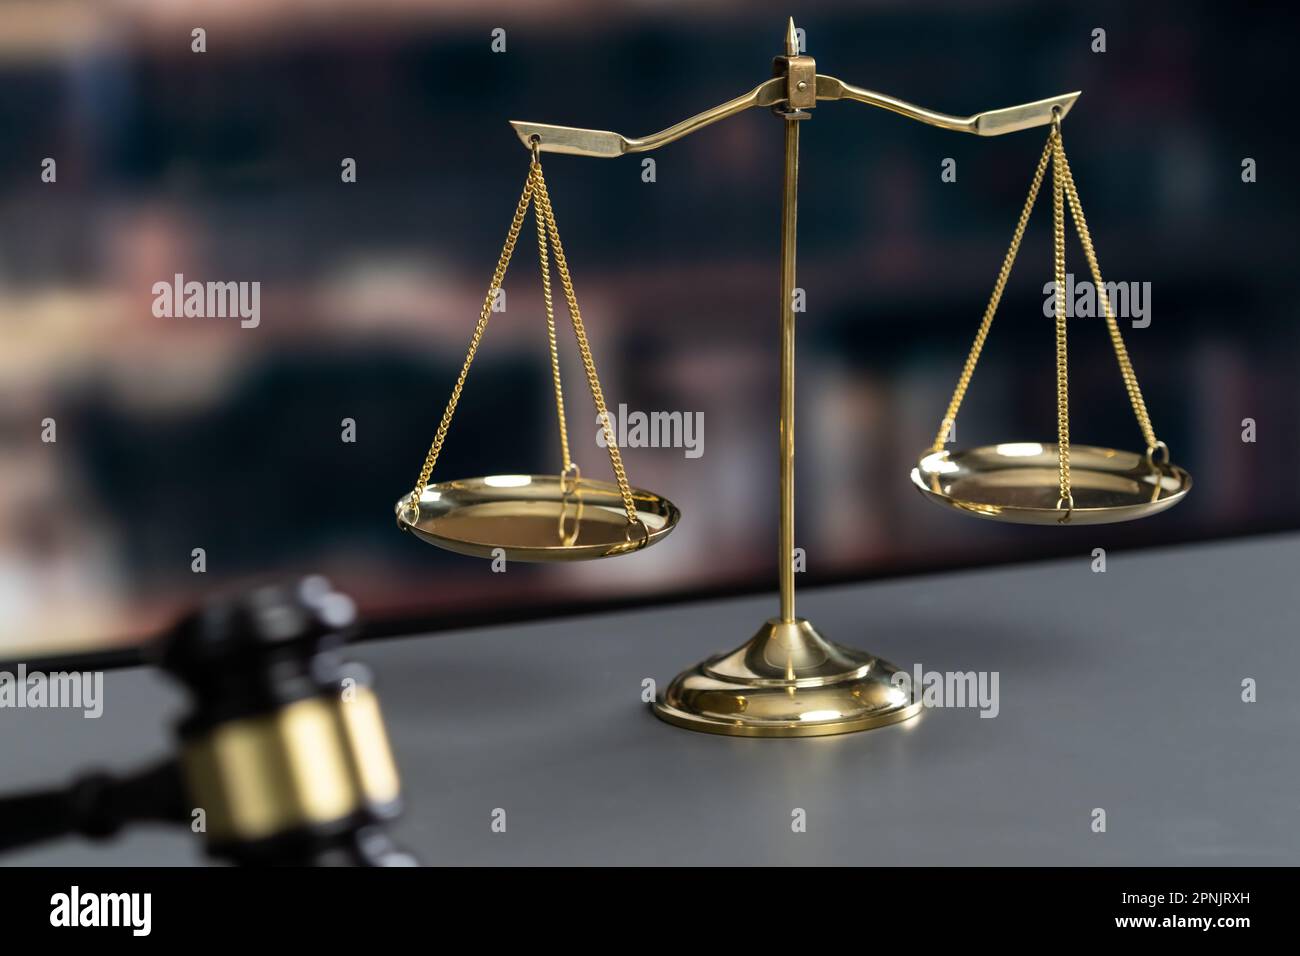 Glänzende goldene Waage und Holzhammer in Anwaltskanzlei oder  Anwaltskanzlei als Konzept der Gerechtigkeit und ein gemeinsames  Rechtssymbol. Waage für Stockfotografie - Alamy